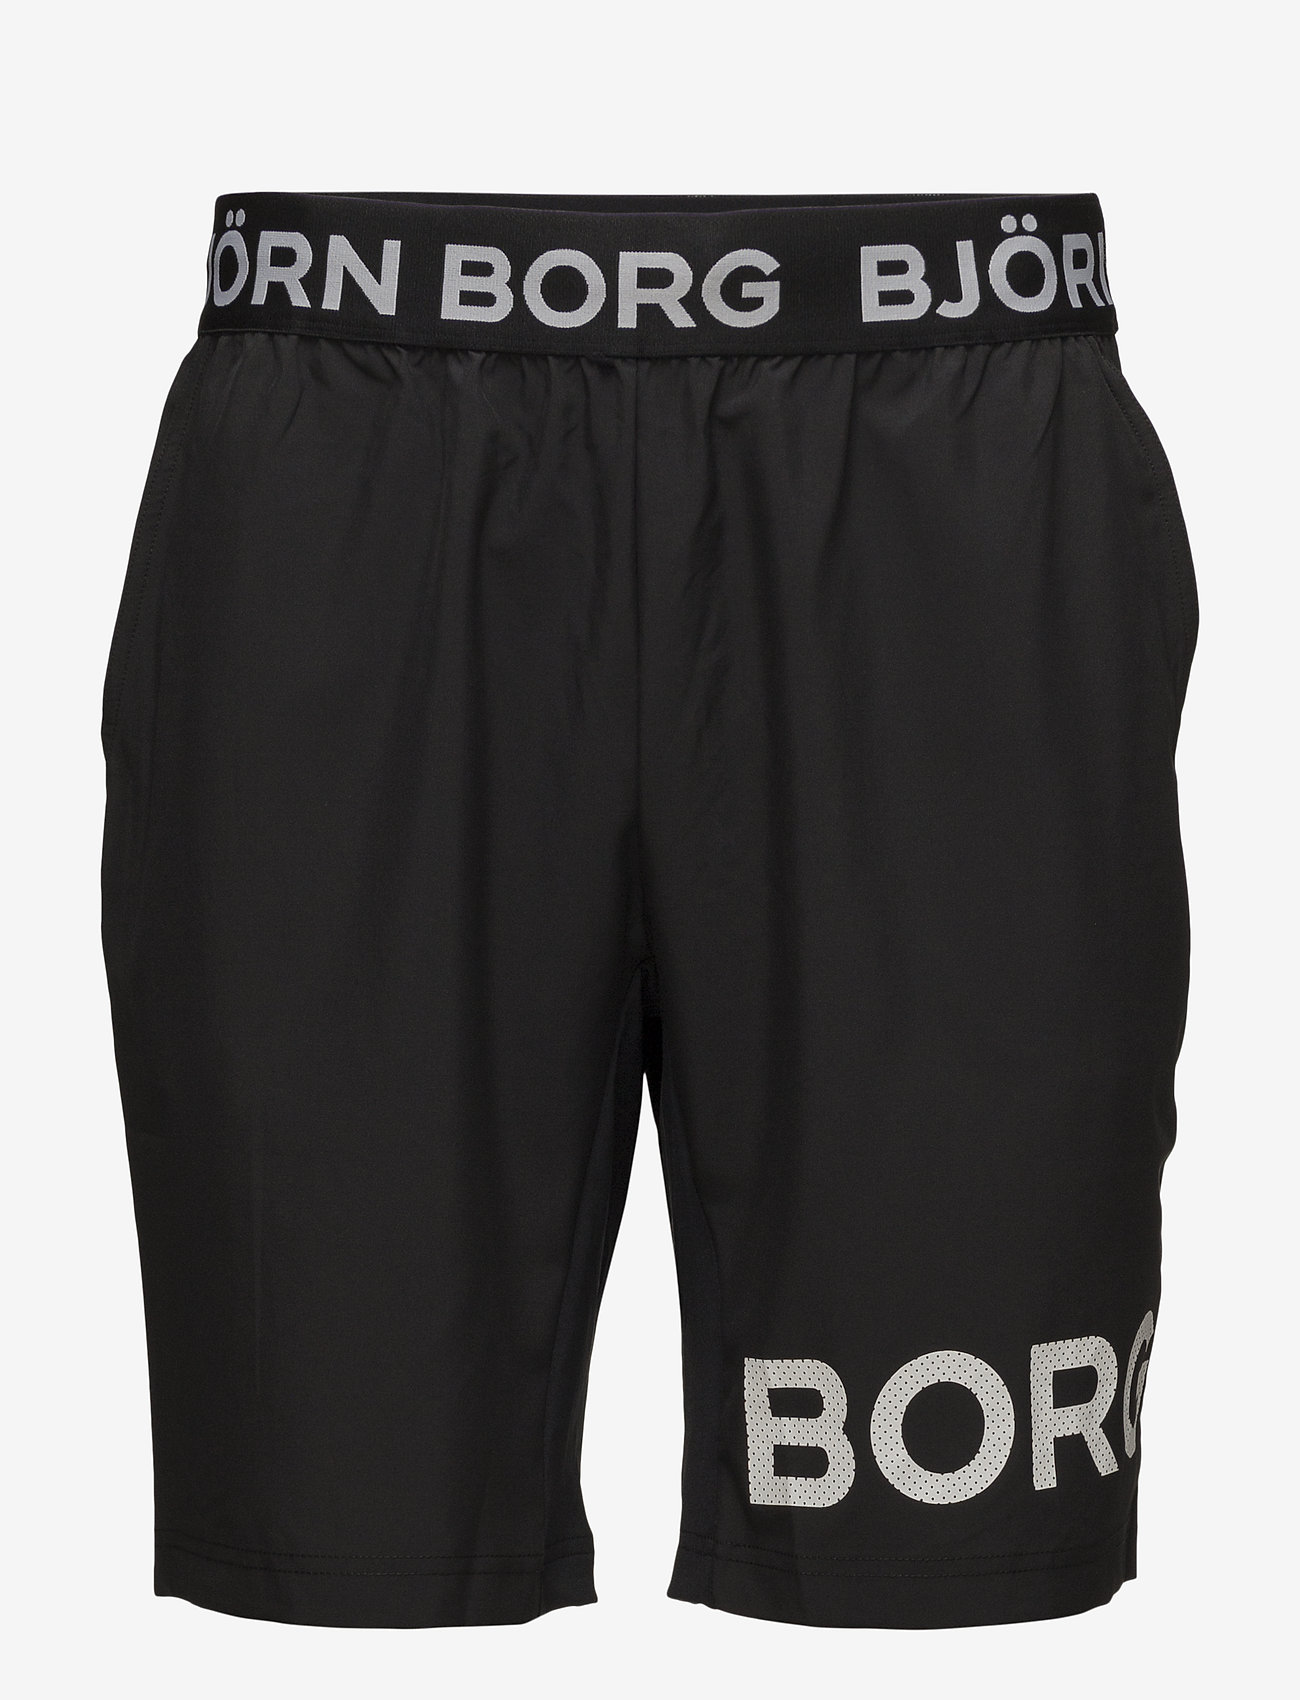 Björn Borg - BORG SHORTS - lägsta priserna - black beauty - 0